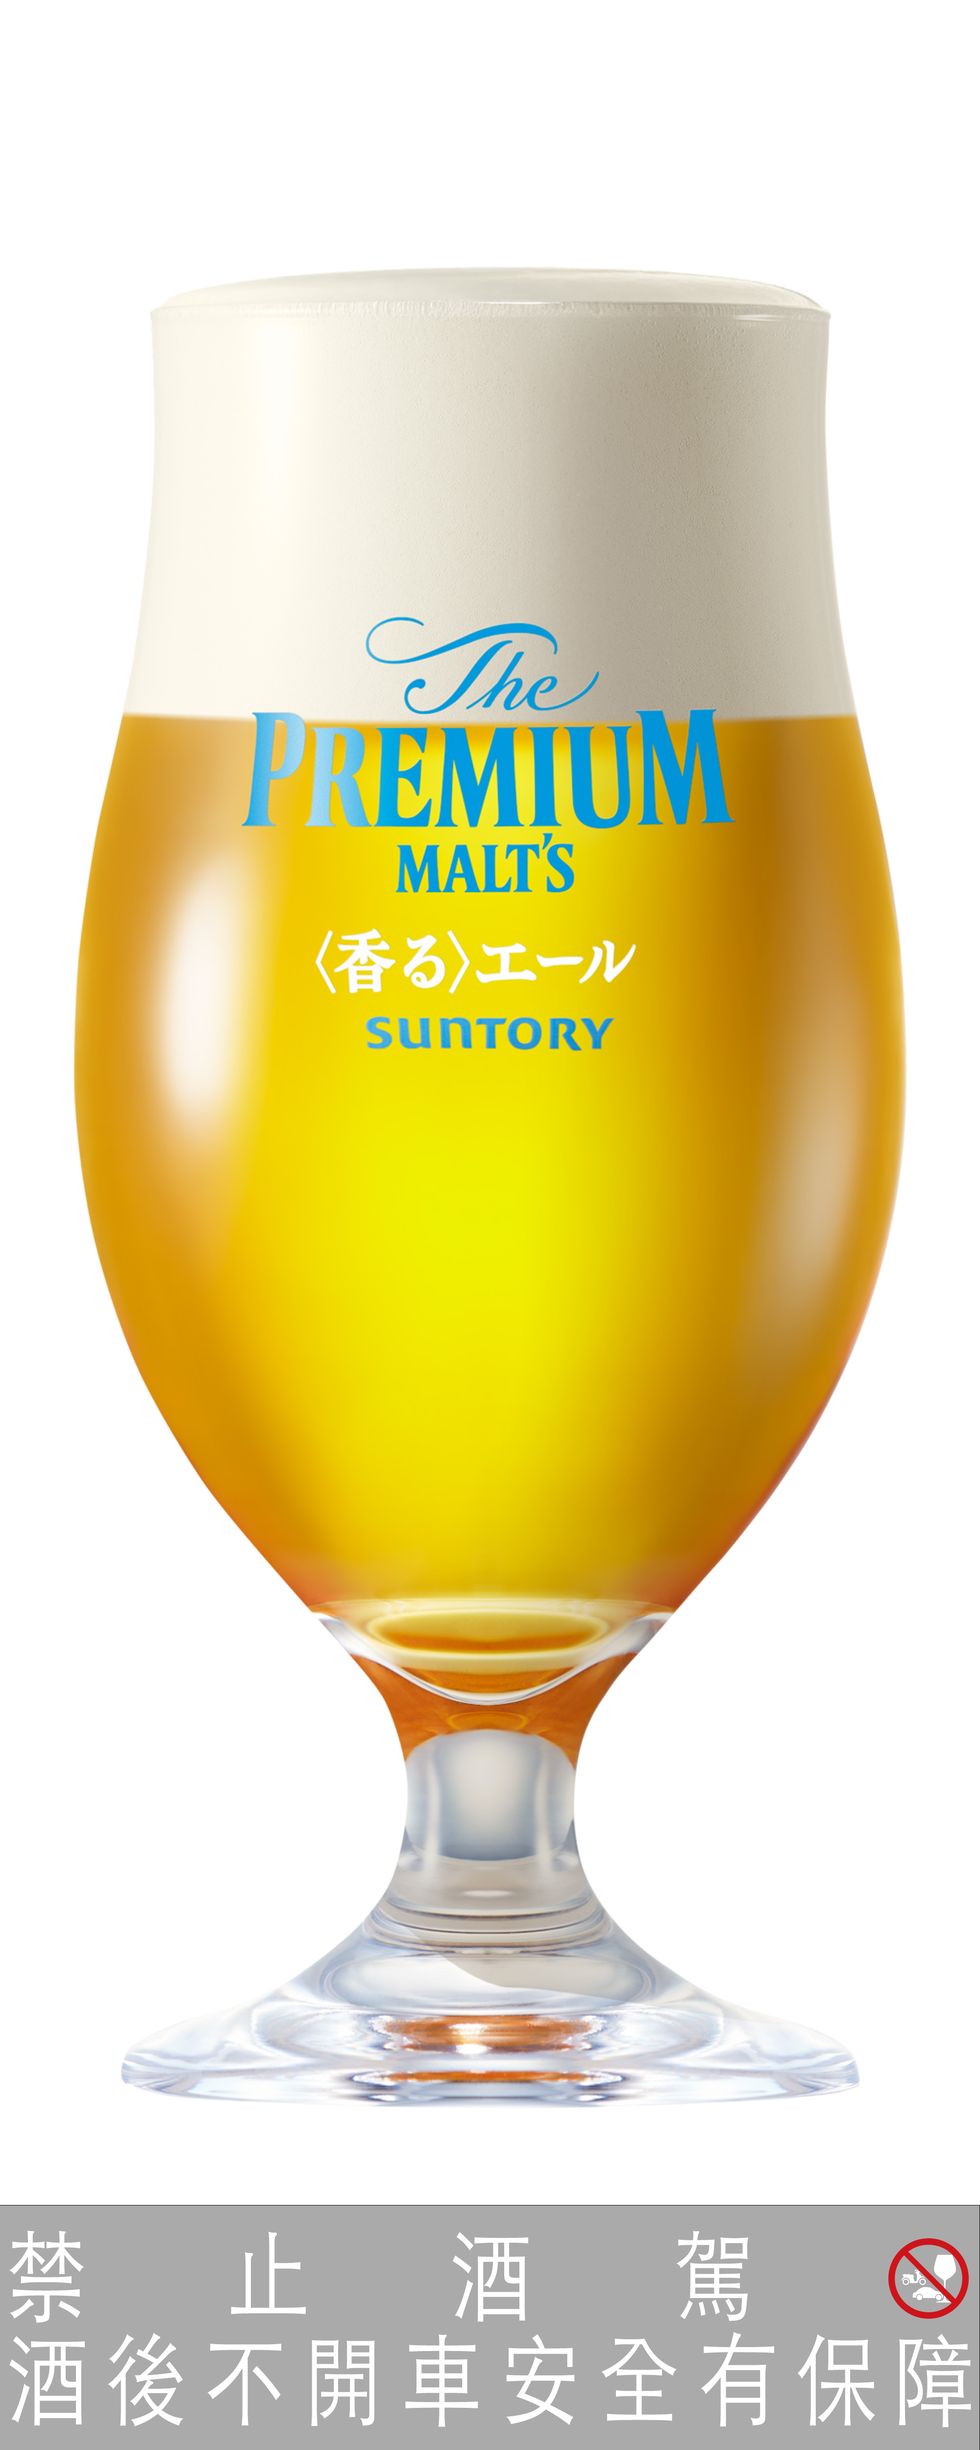 三得利頂級啤酒the premium malt’s